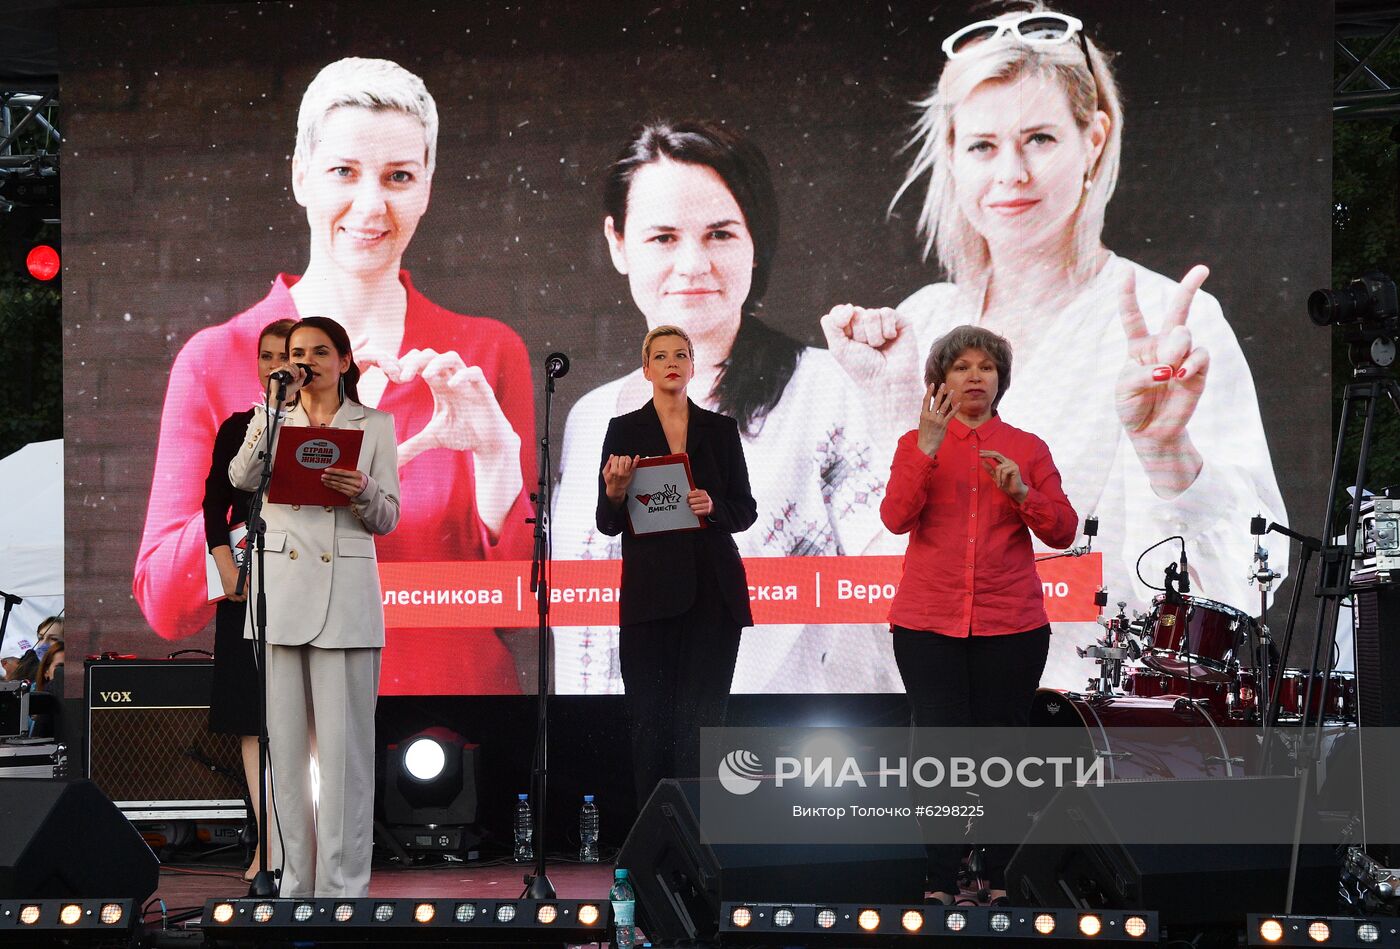 Встреча с избирателями кандидата в президенты Белоруссии С. Тихановской